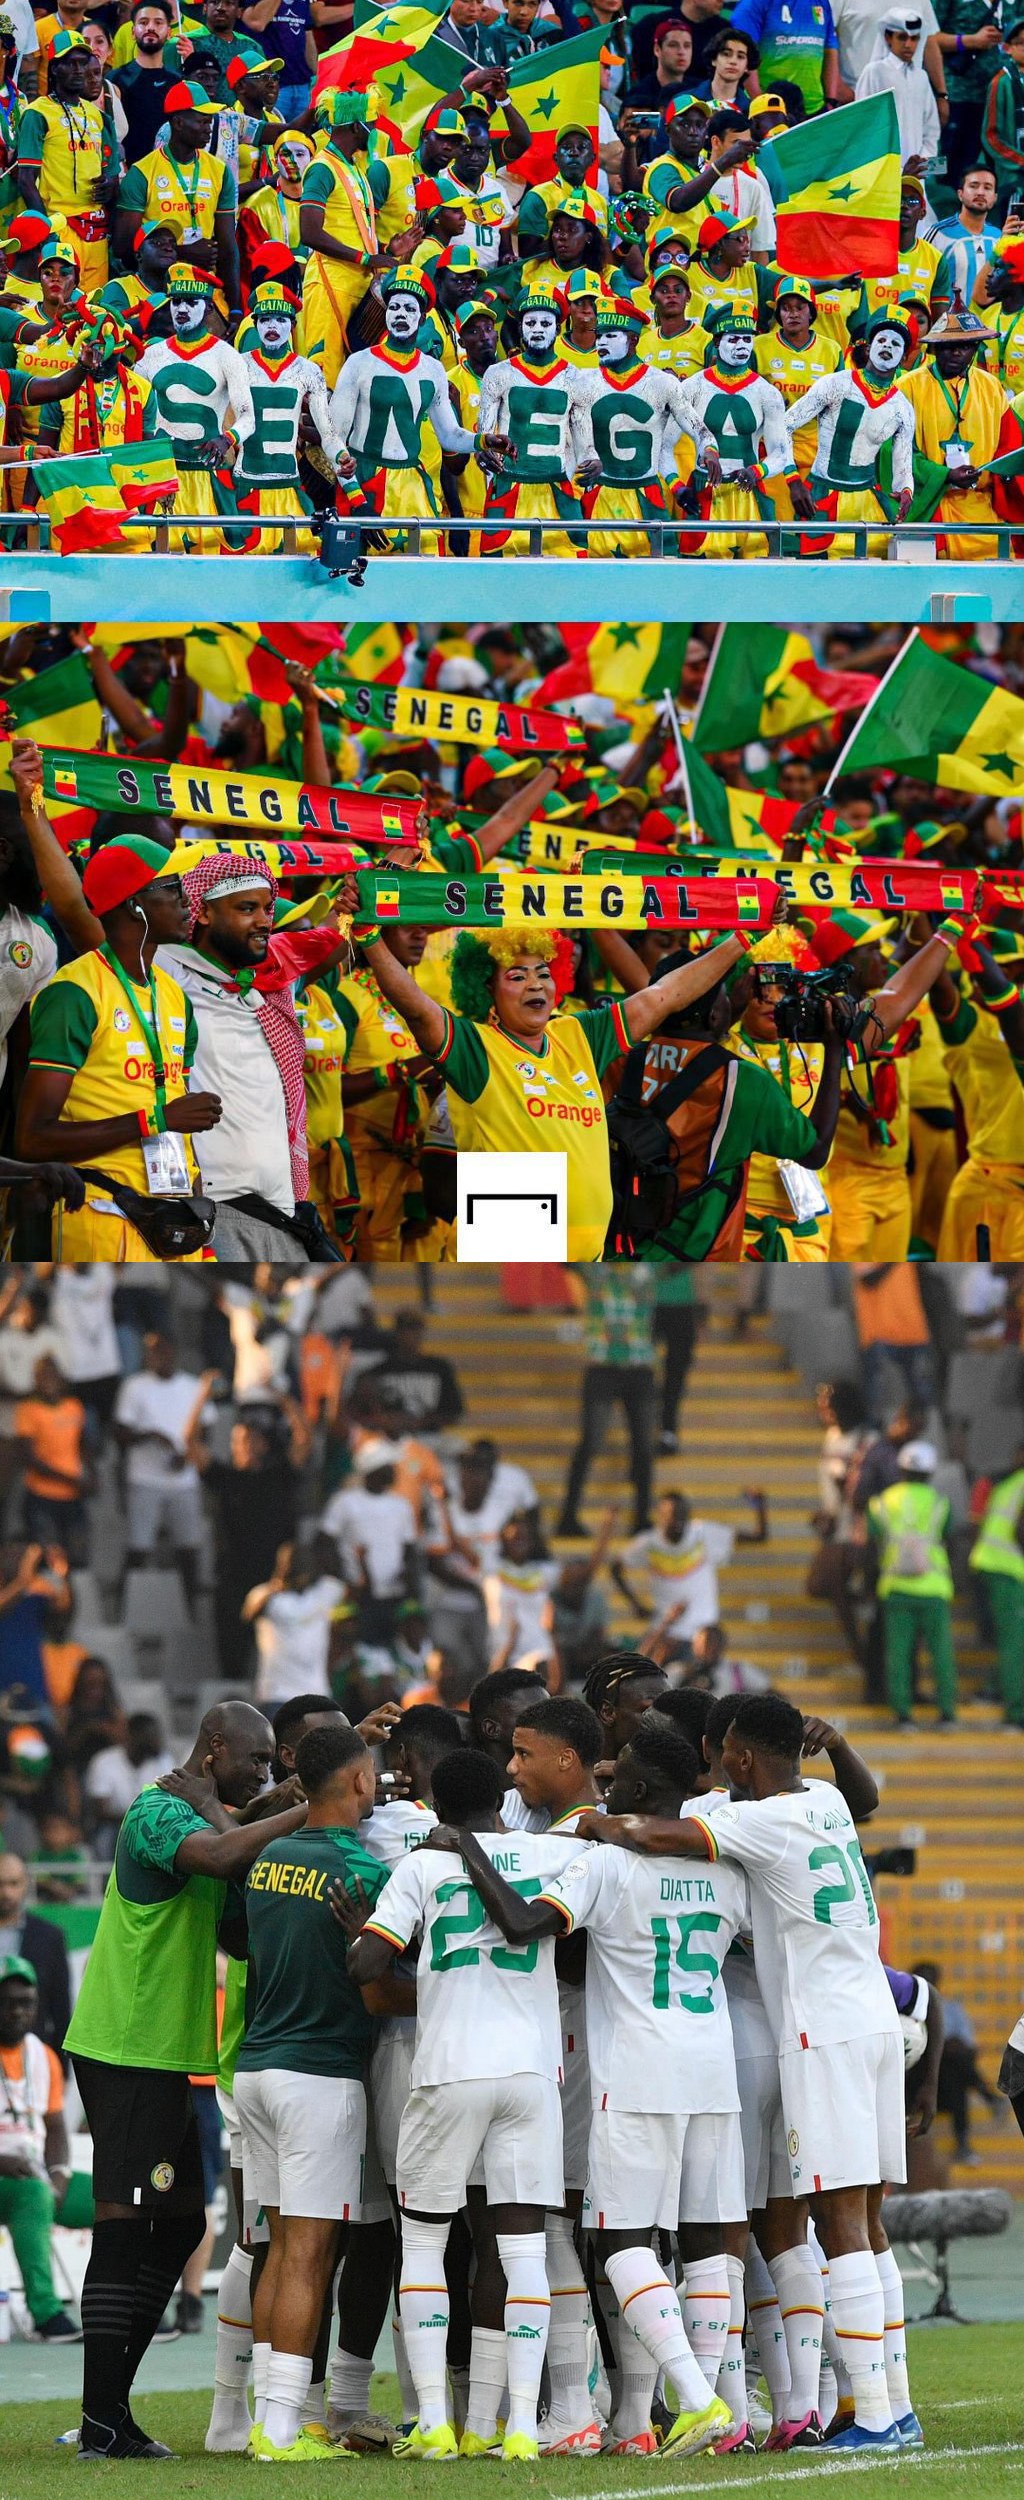 Le Sénégal se qualifie pour les huitièmes de finale et enfonce le Cameroun